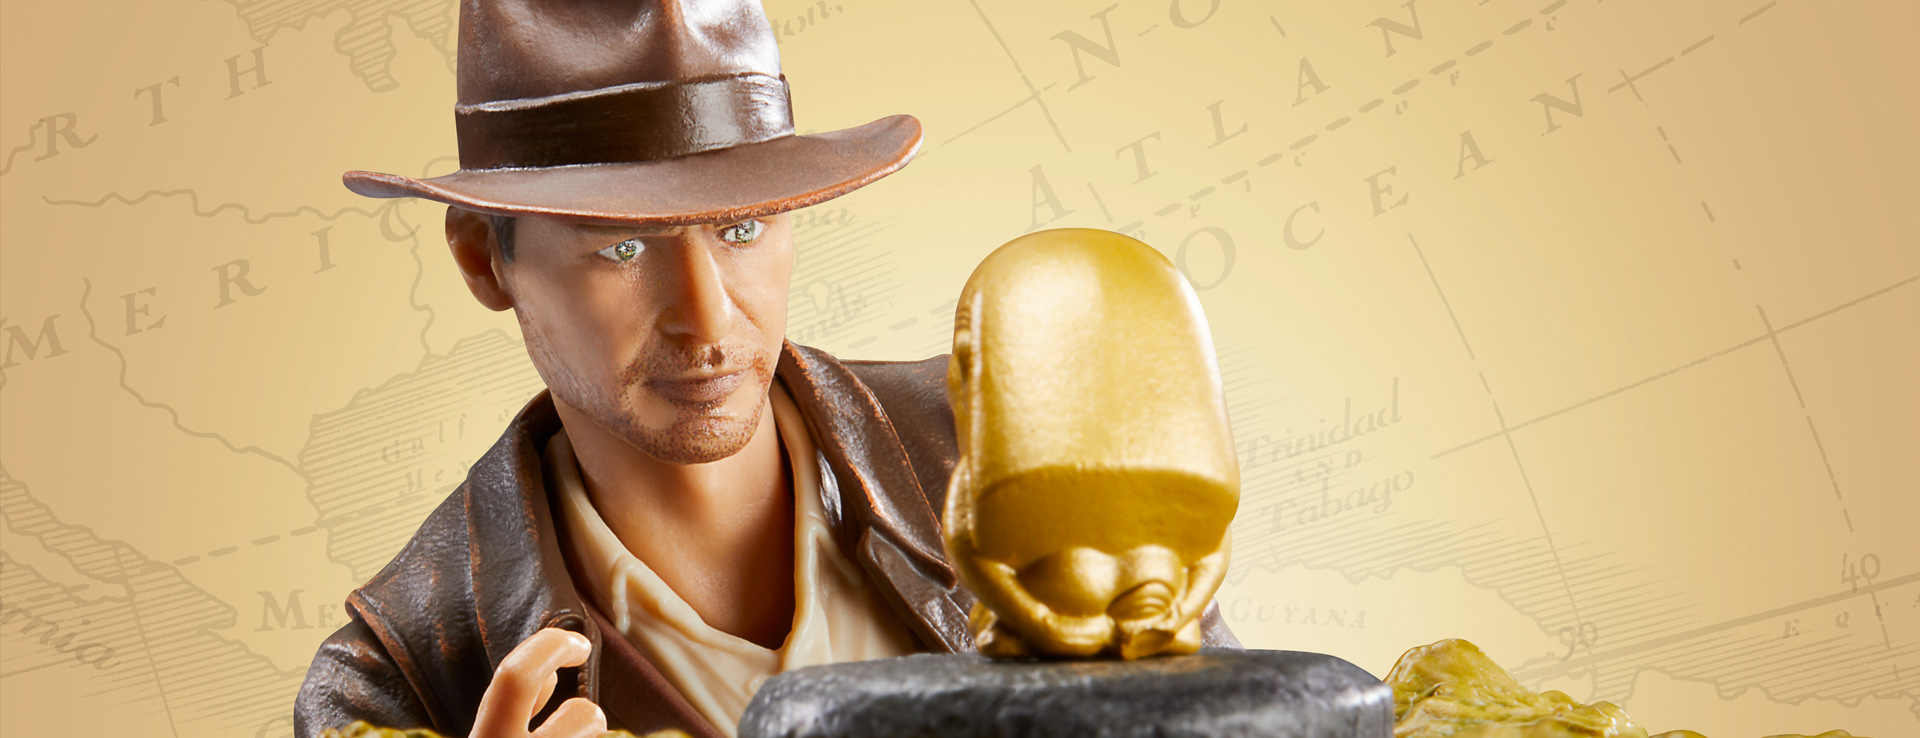 SWCE 2023 Indiana Jones Action Figure Reveals from Hasbro